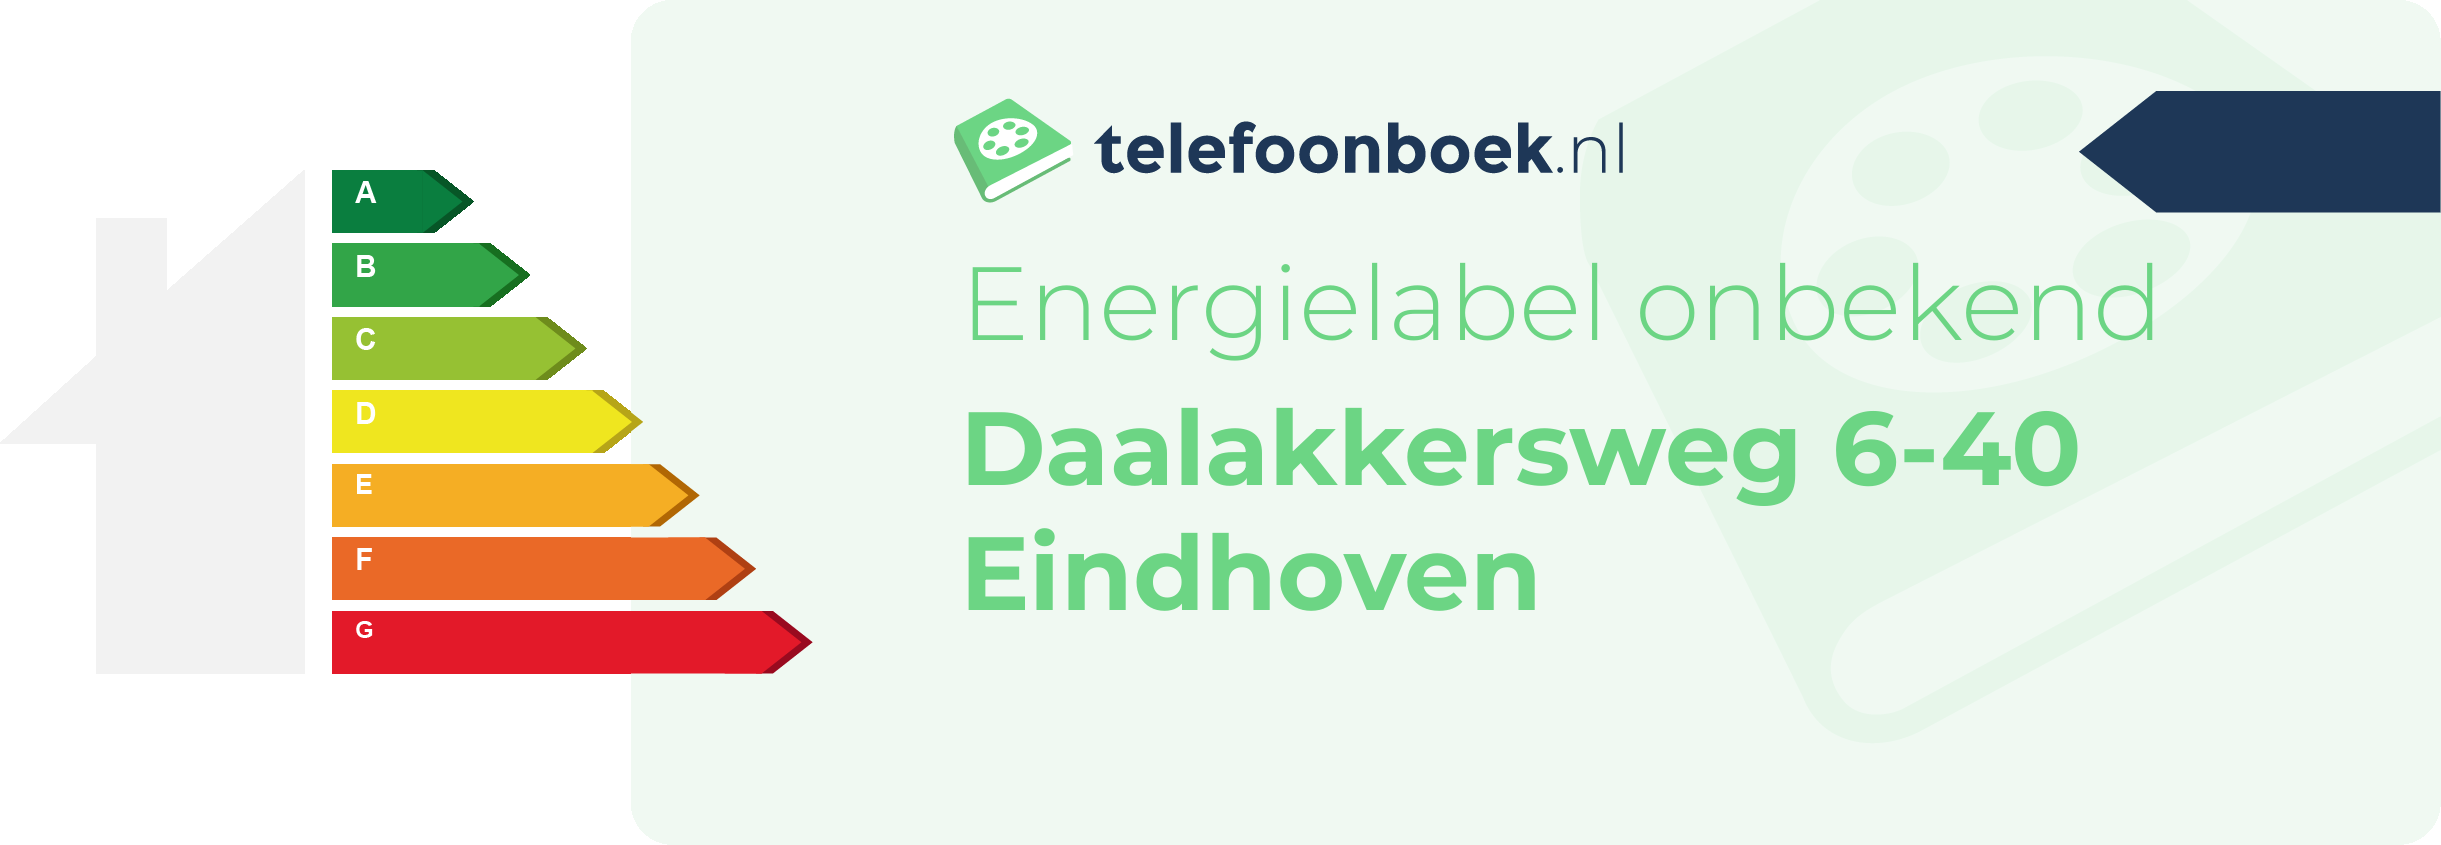 Energielabel Daalakkersweg 6-40 Eindhoven